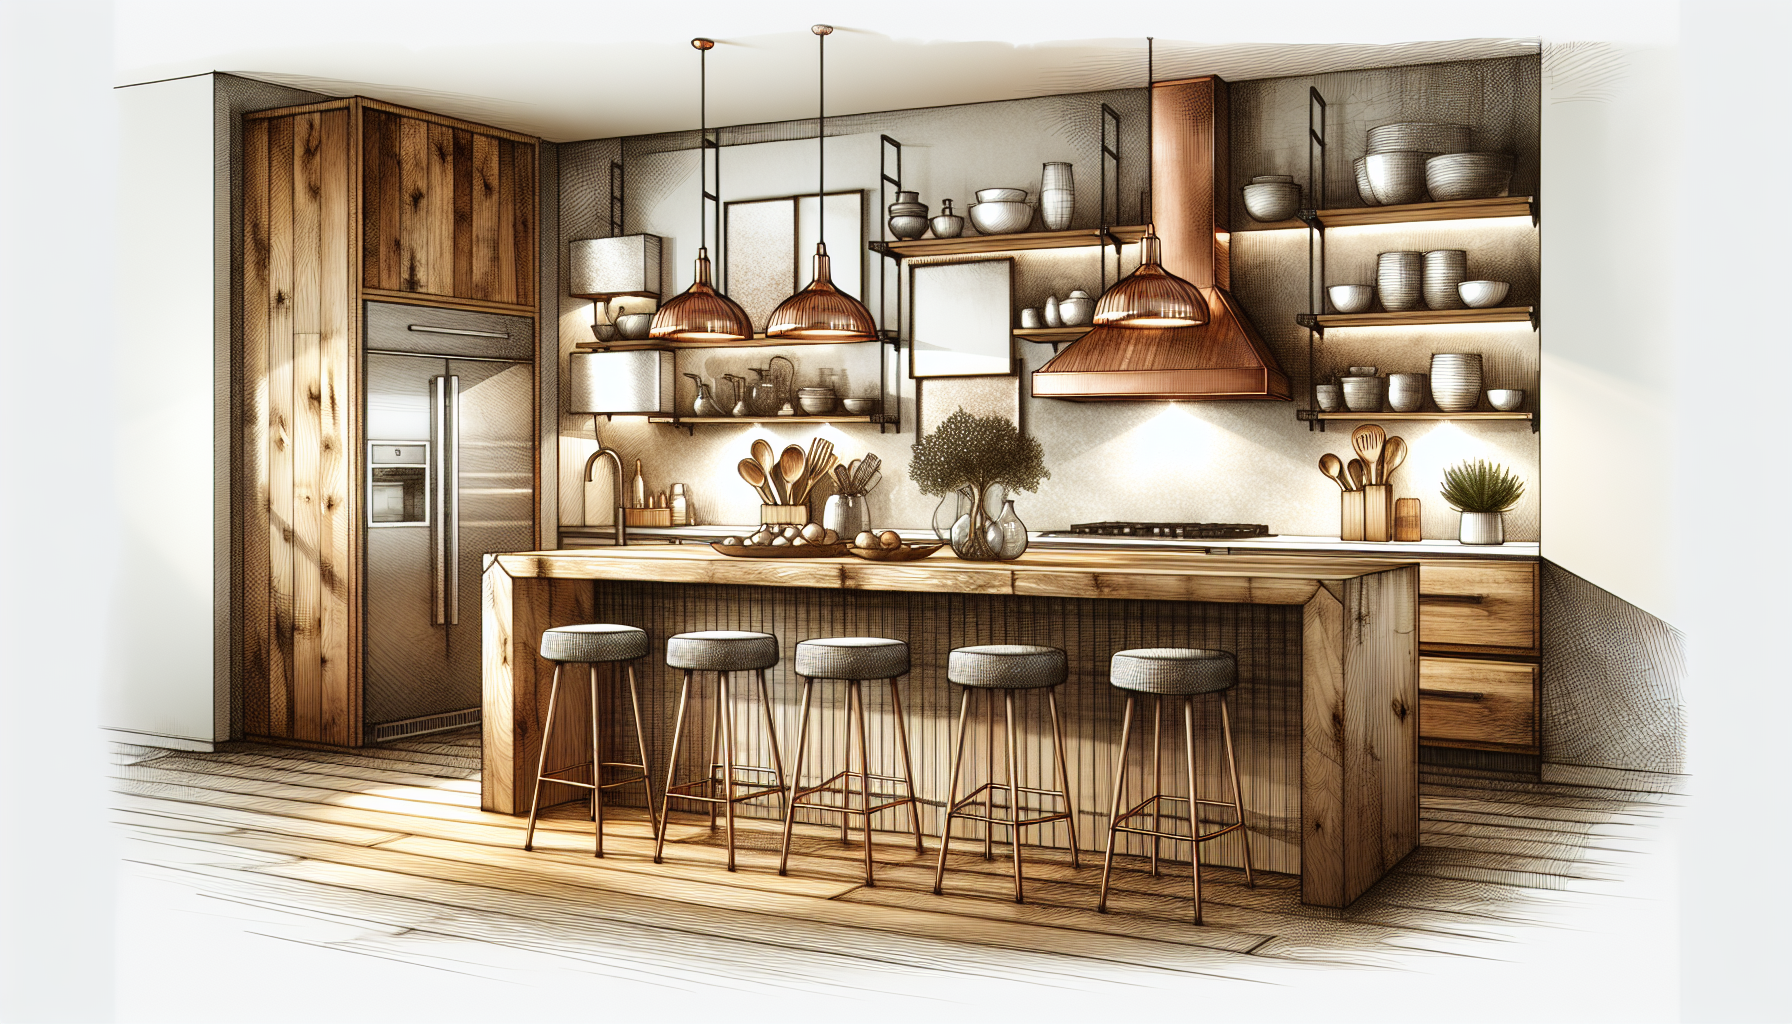 Moderne Küchengestaltung mit Holzelementen und gemütlichem Ambiente